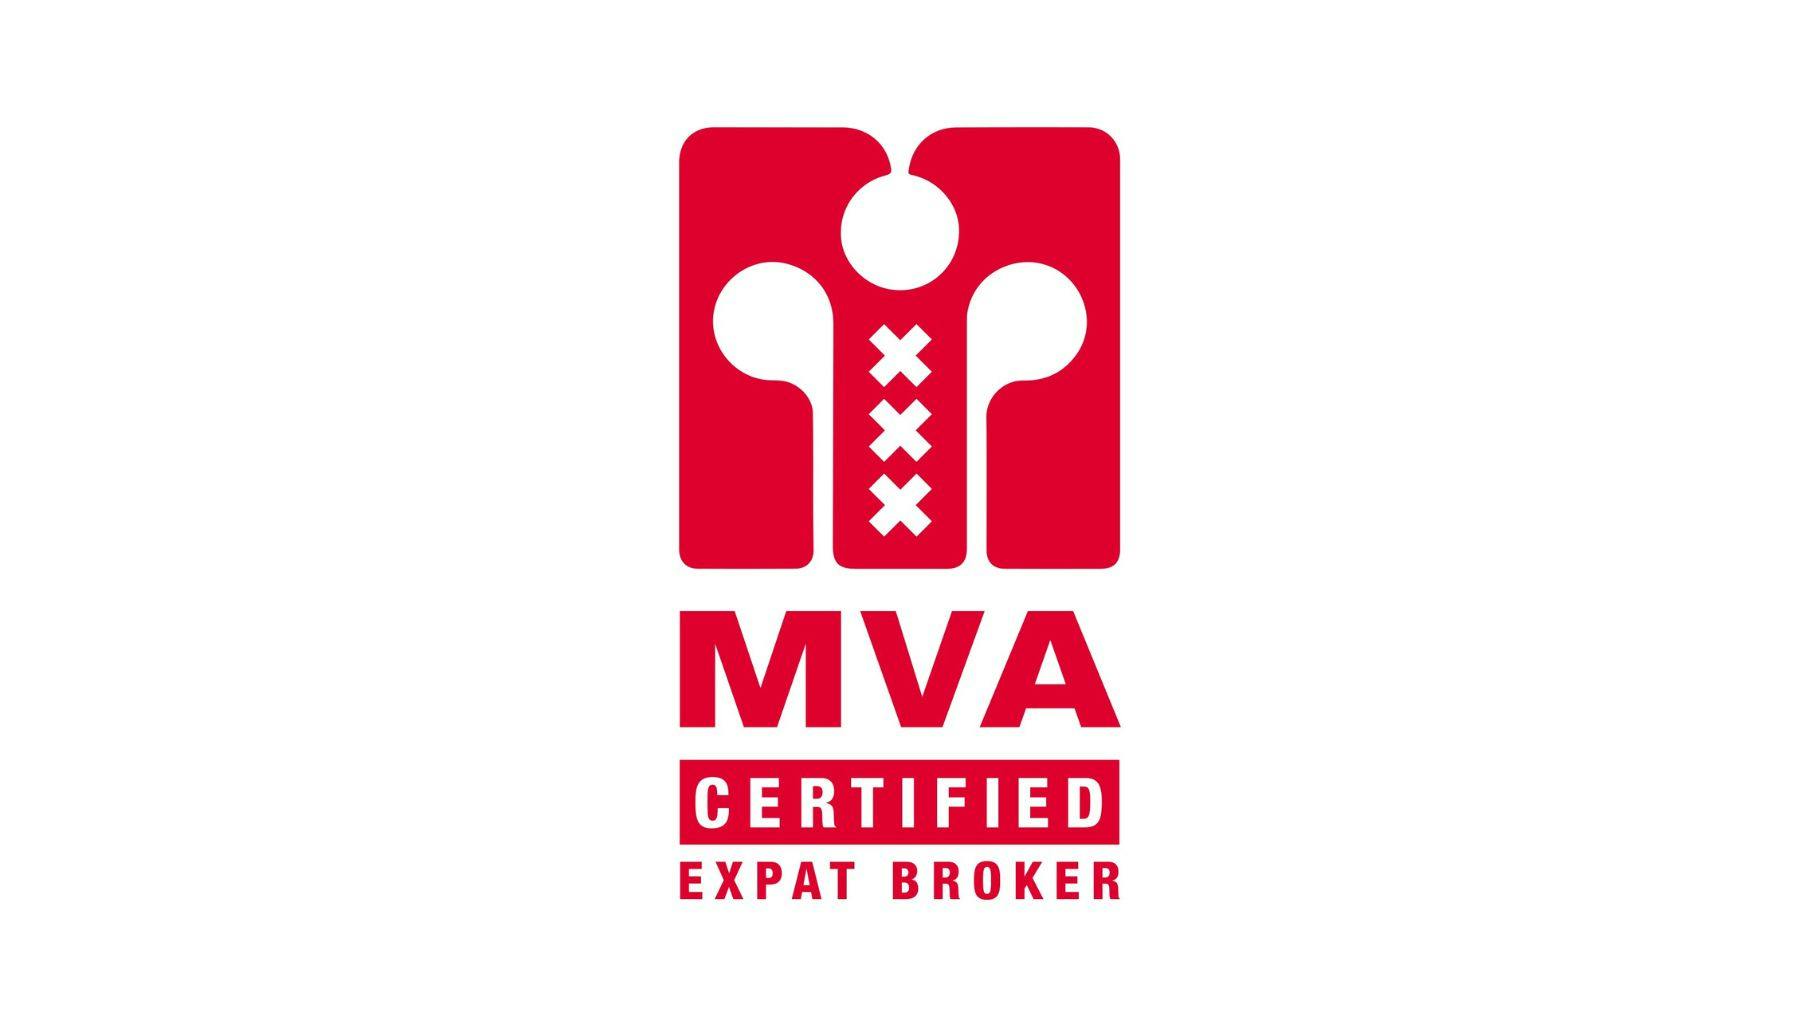 MVA Certified Expat Broker